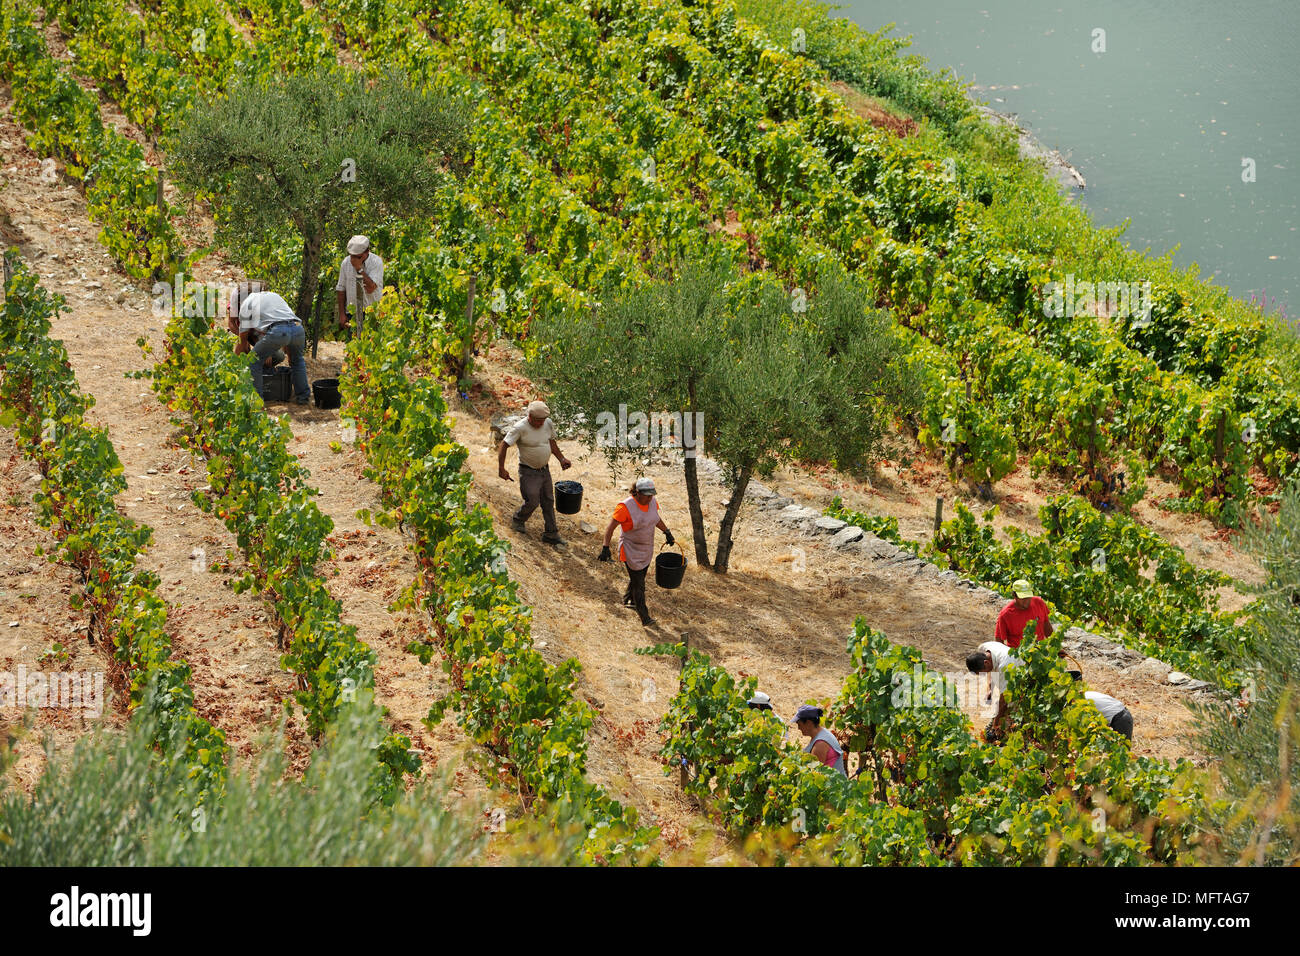 La récolte des raisins le long de la rivière Tedo, un affluent du fleuve Douro. Alto Douro, site du patrimoine mondial de l'Unesco, Portugal Banque D'Images